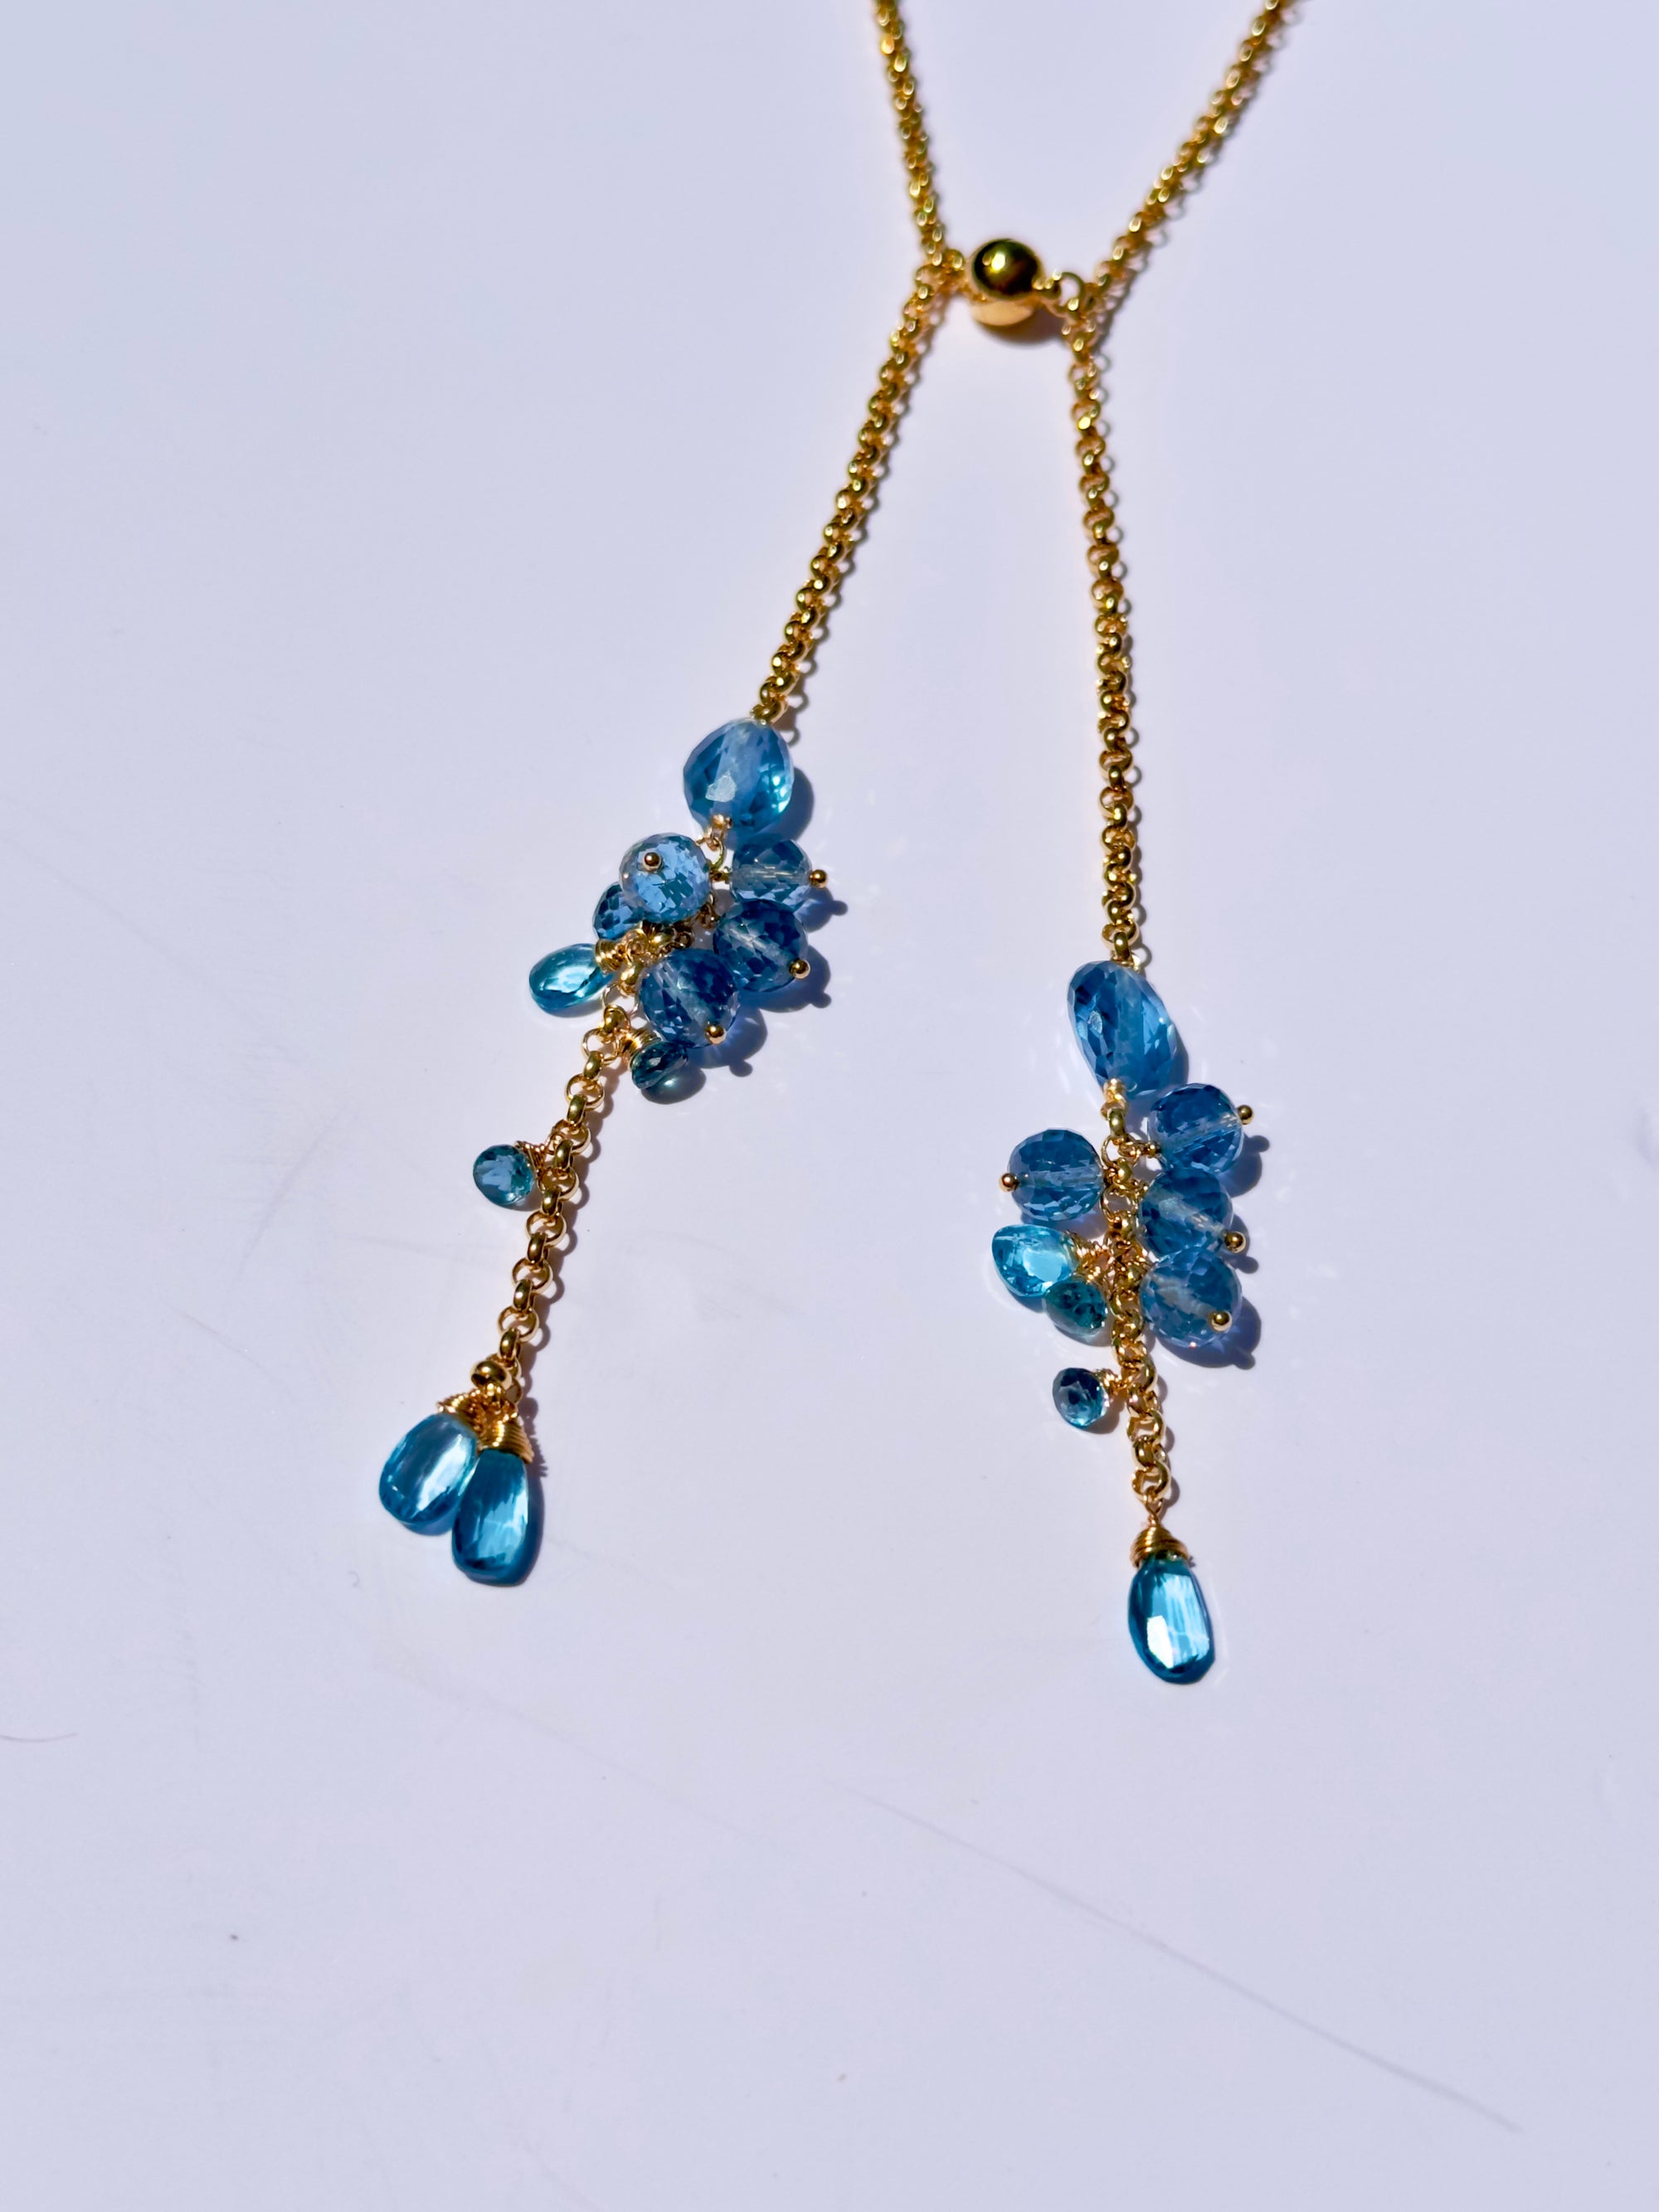 Spherica Signature Wrap Necklace w/ Premium Cut London Blue Topaz & 24K Gold Vermeil Chain